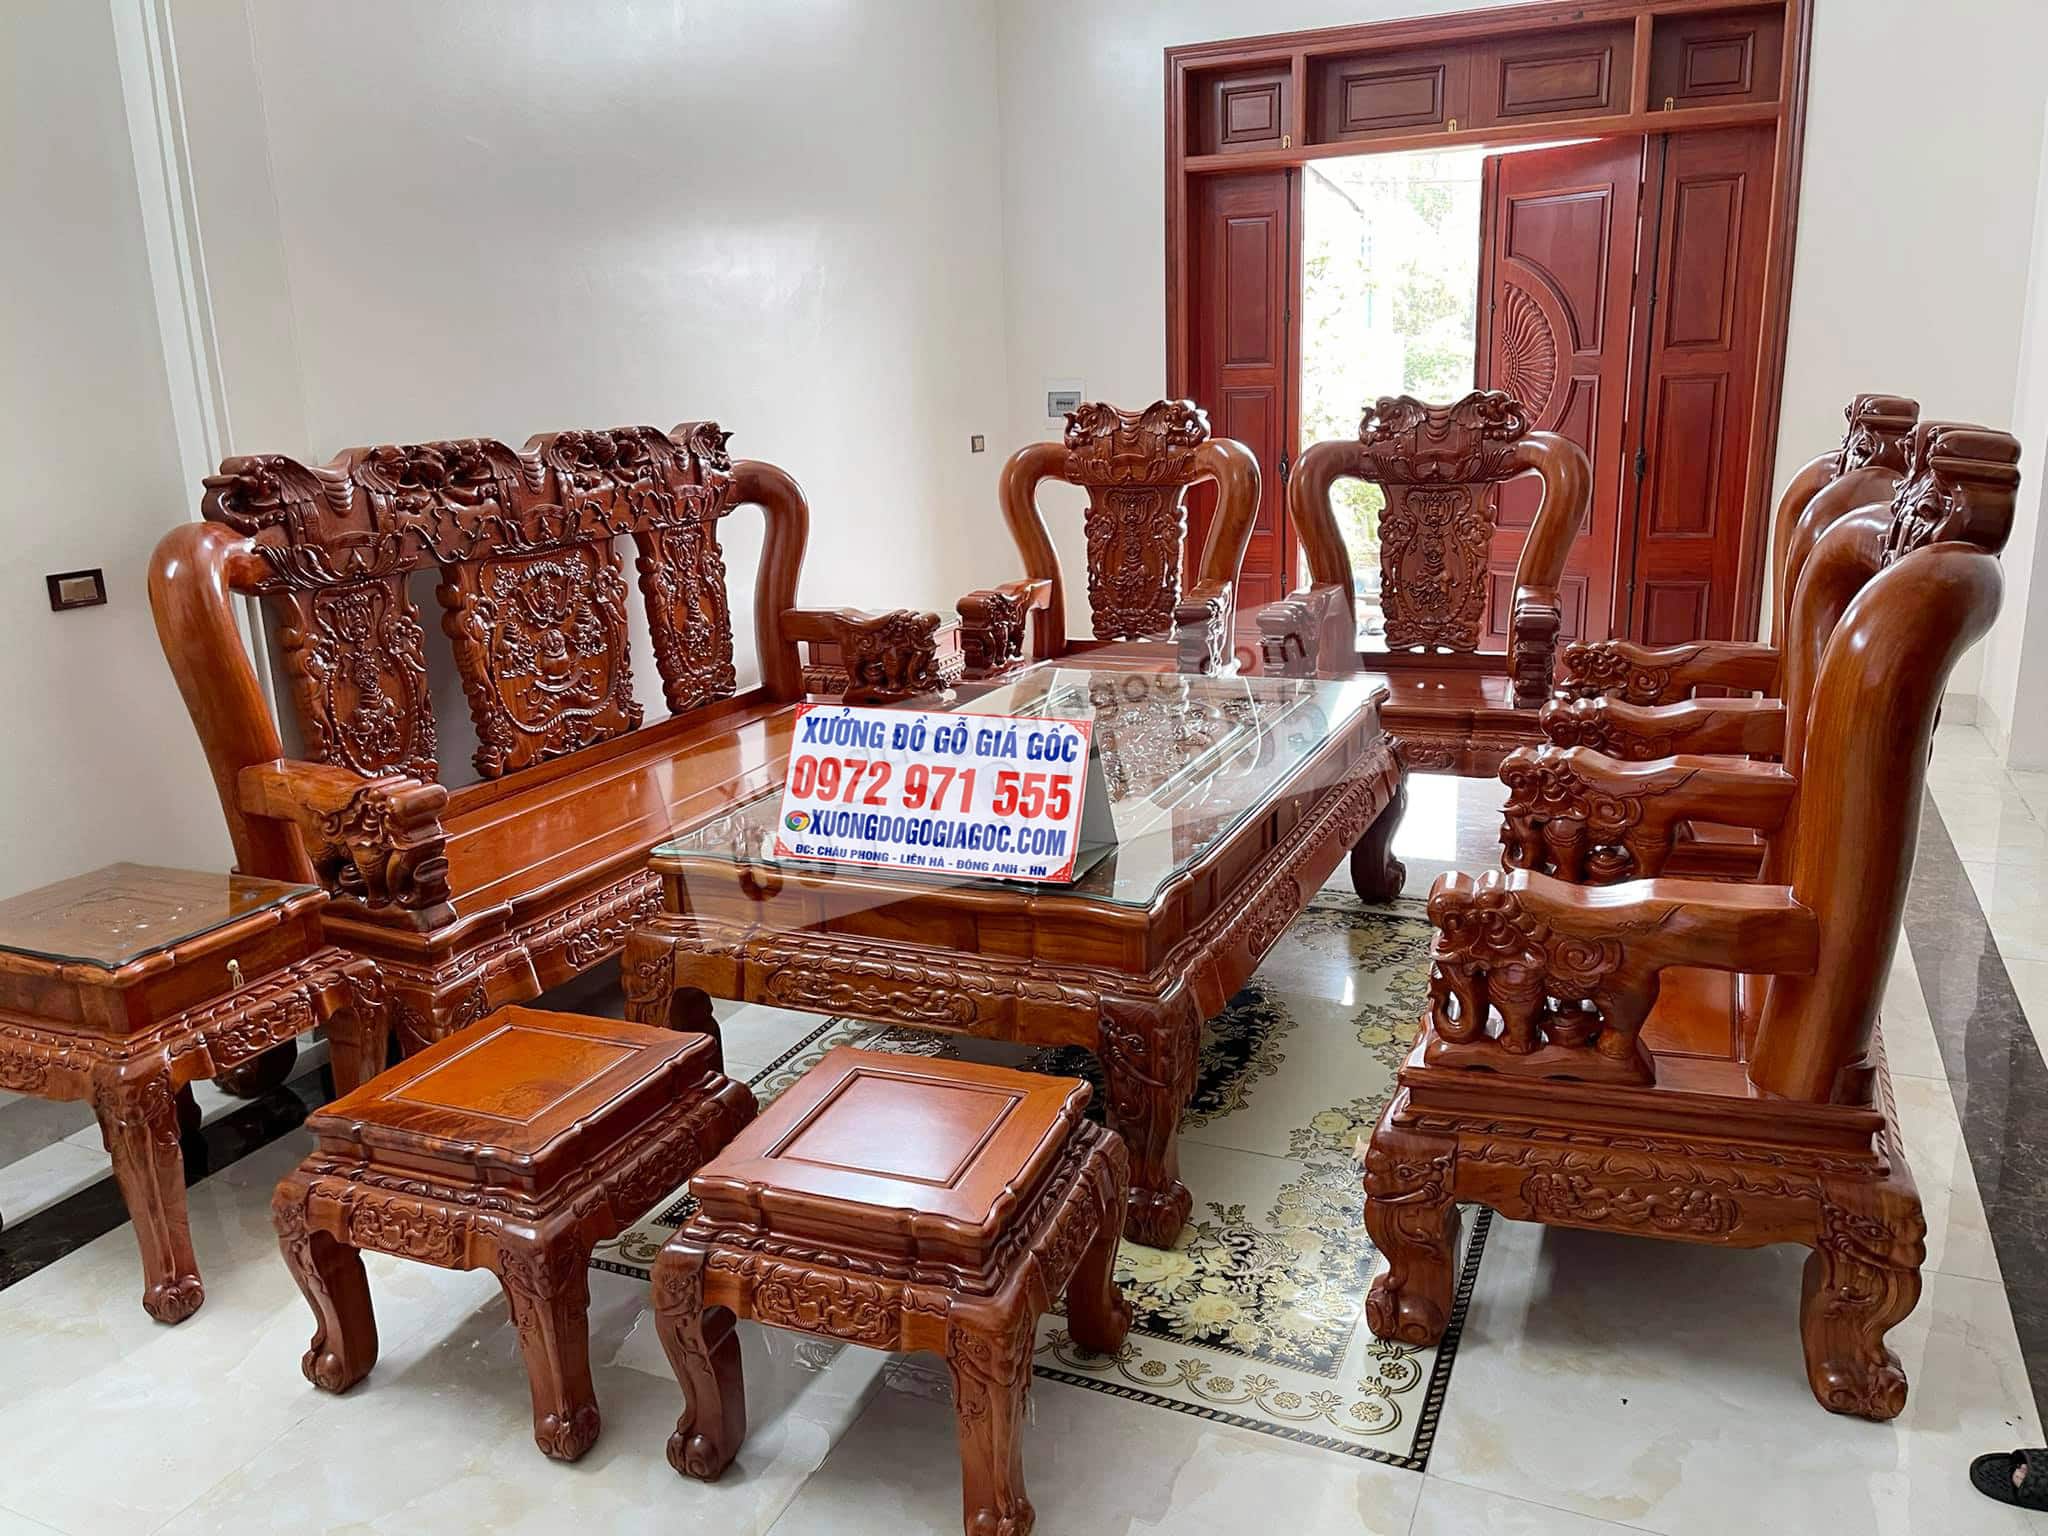 Bộ bàn ghế quốc dân đang là lựa chọn hàng đầu của rất nhiều gia đình Việt Nam. Hãy xem qua hình ảnh của các bộ bàn ghế quốc dân được bán trên trang web của chúng tôi để tìm ra lựa chọn phù hợp nhất cho căn phòng của bạn.